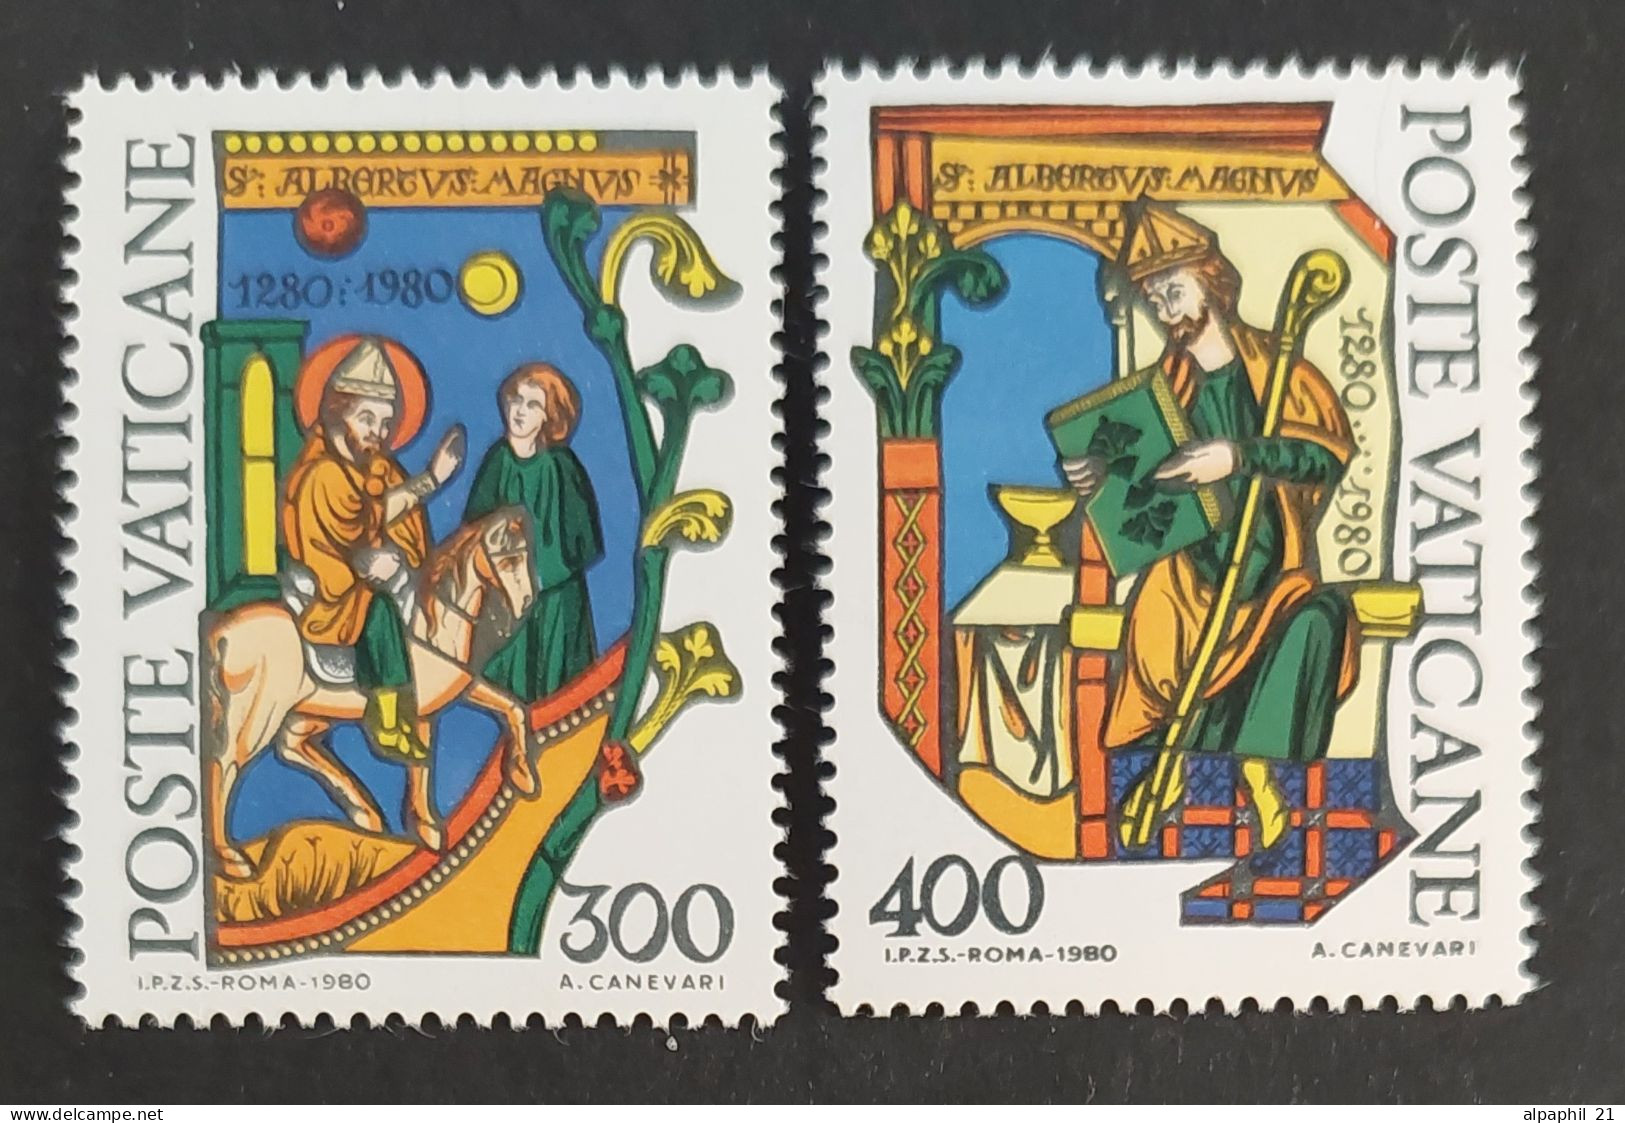 Città Del Vaticano: St. Albert The Great, 1980 - Unused Stamps